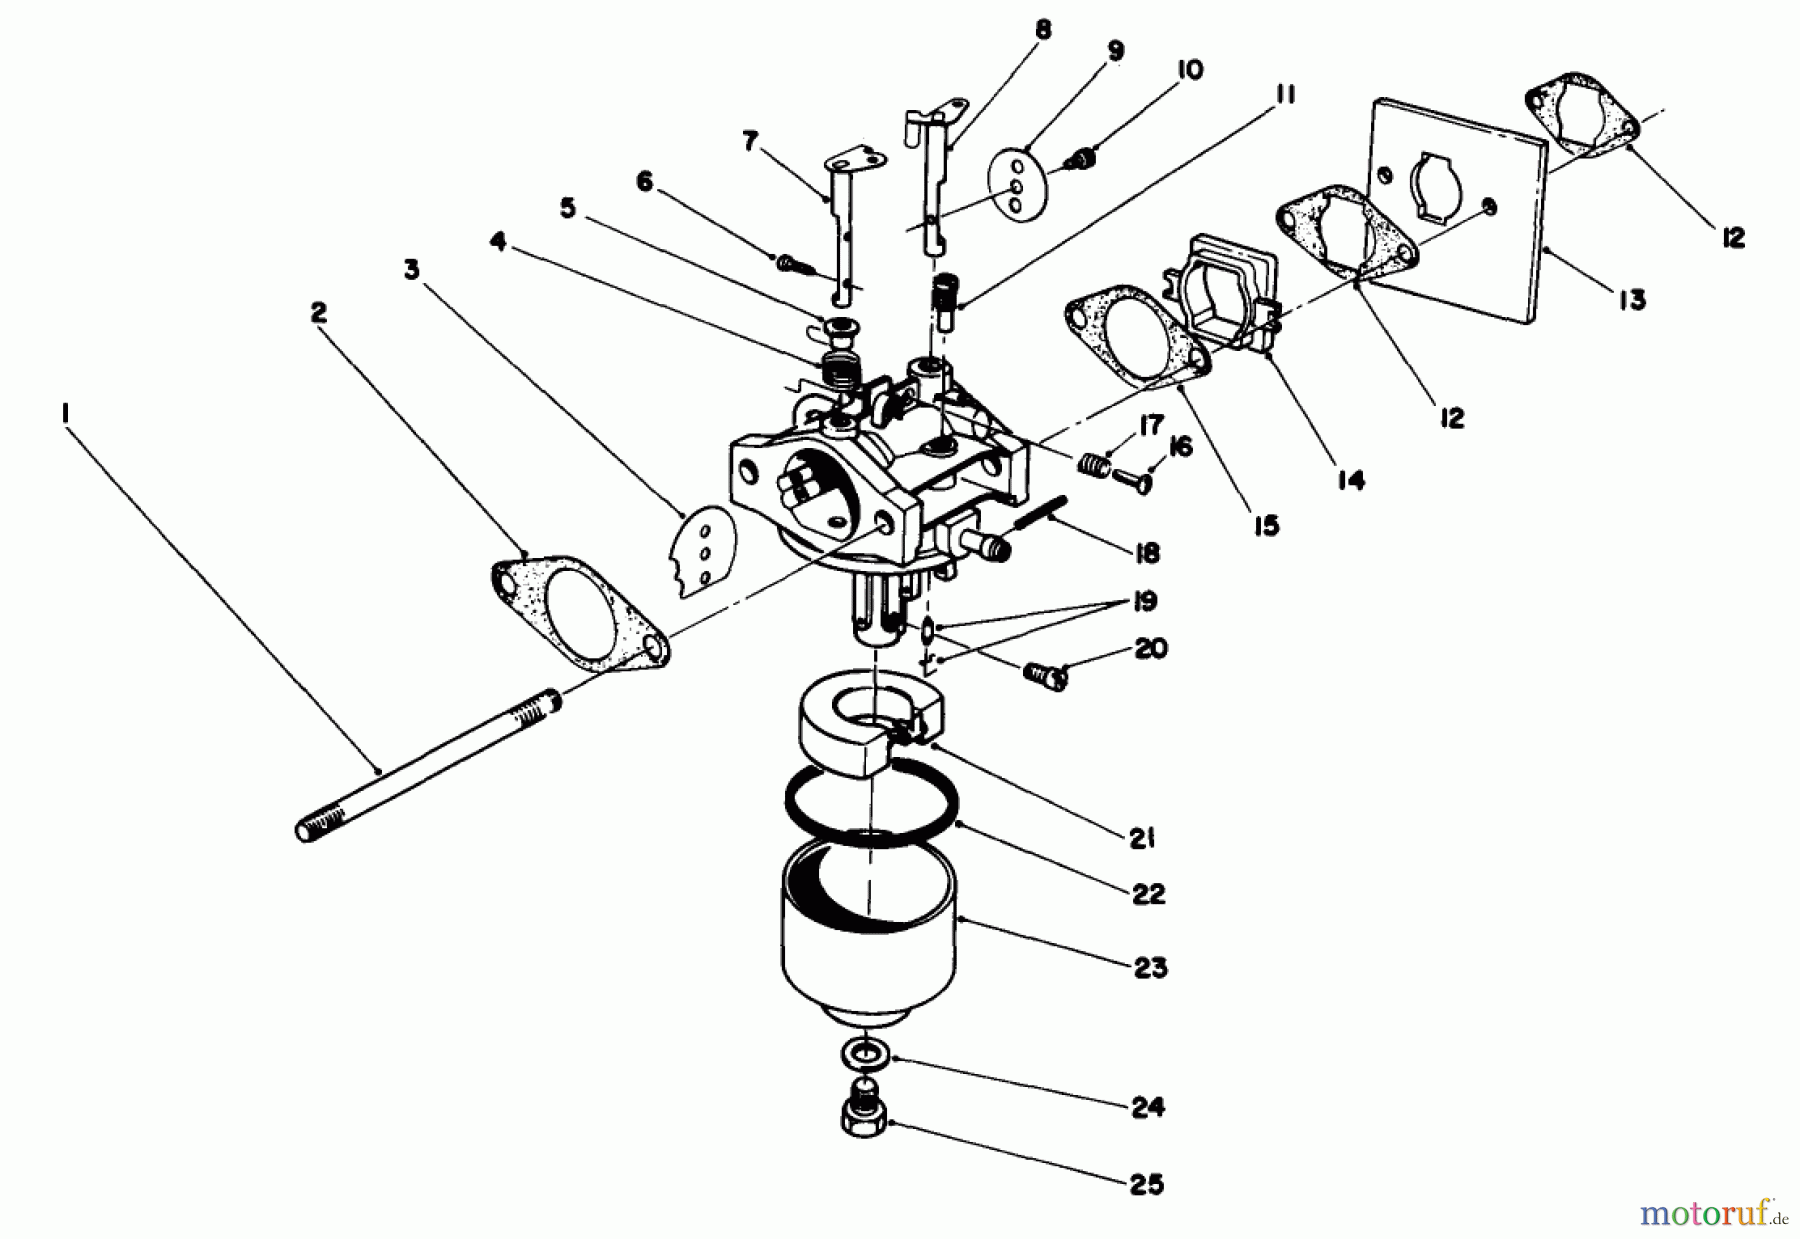  Toro Neu Mowers, Walk-Behind Seite 2 22035 - Toro Lawnmower, 1988 (8002990-8999999) ENGINE ASSEMBLY MODEL NO. 47PH7 #3